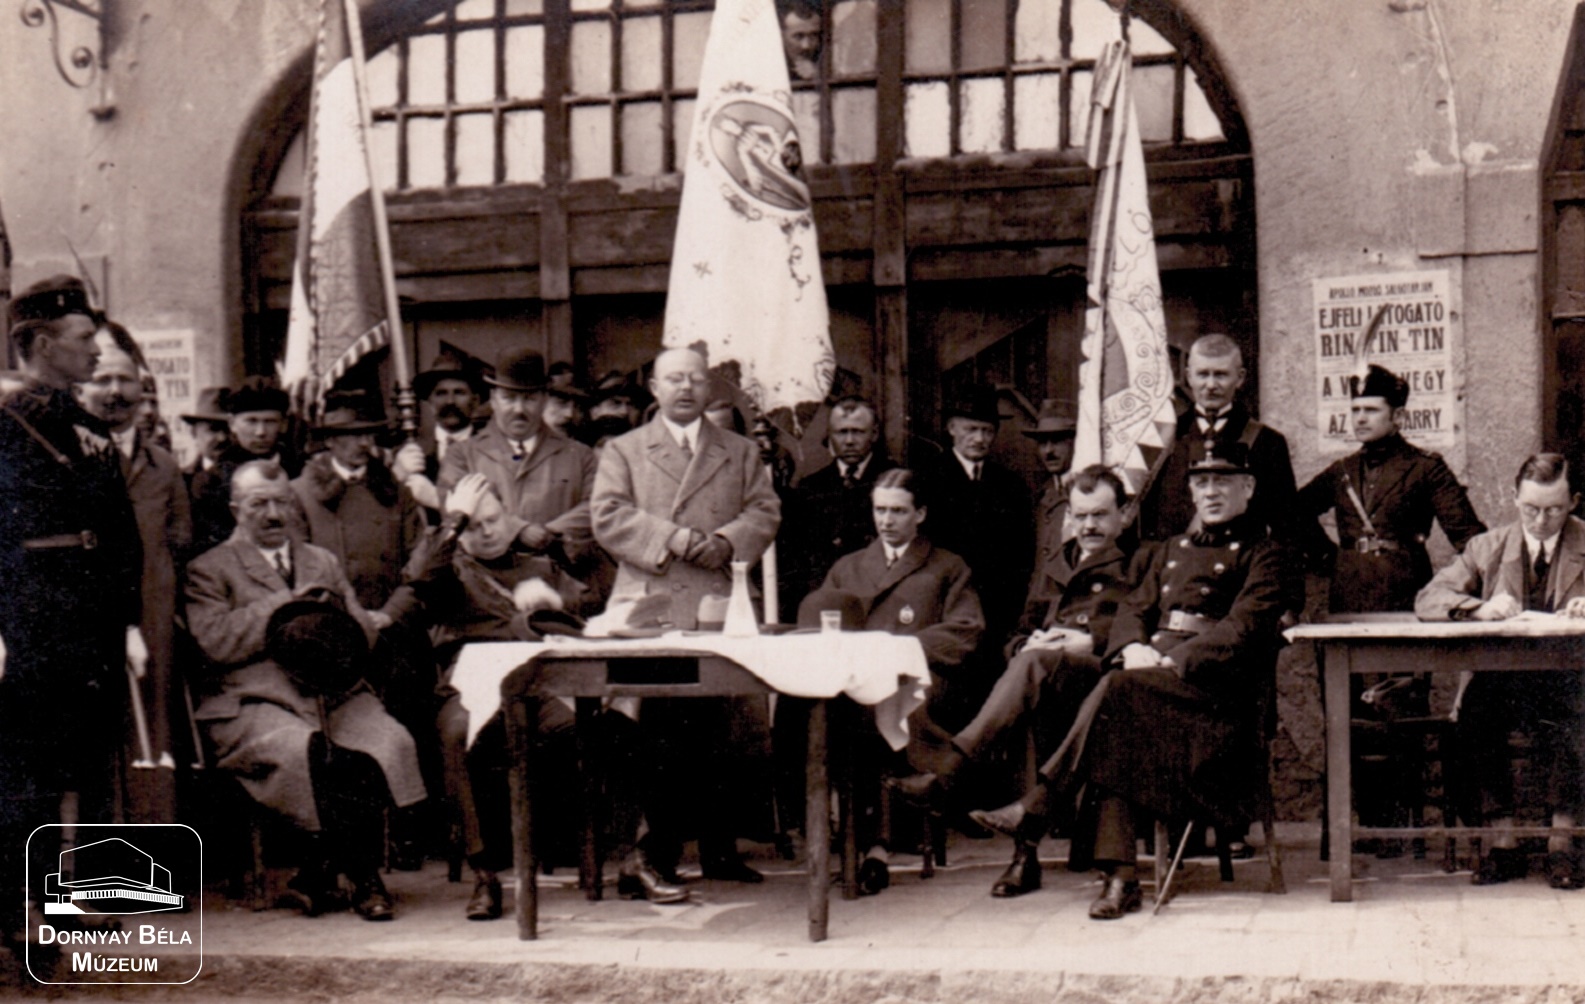 Salgótarjáni rendezvény 1927-ből (fotó hátoldalán lévő évszám) (levente egyesületek zászlószenteléséhez kapcsolódik?) (Dornyay Béla Múzeum, Salgótarján CC BY-NC-SA)